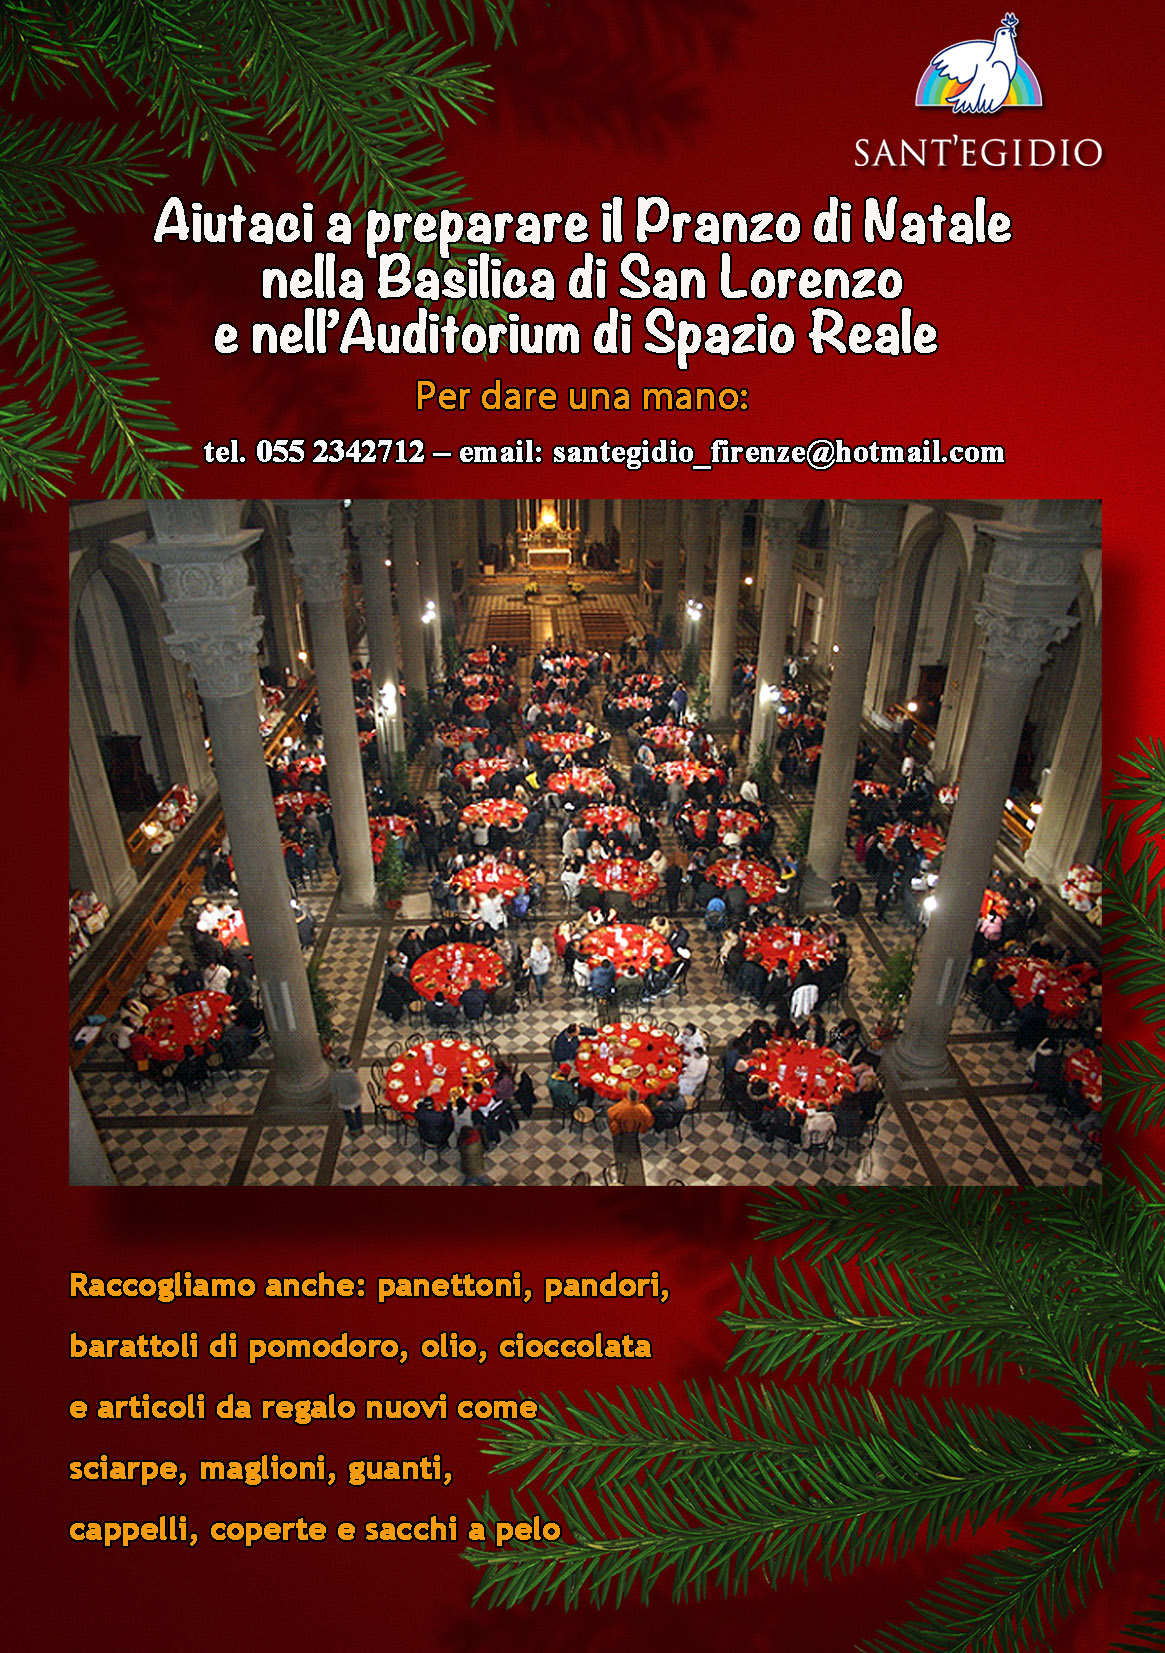 Informazioni per aiutare il Pranzo di Natale a Firenze